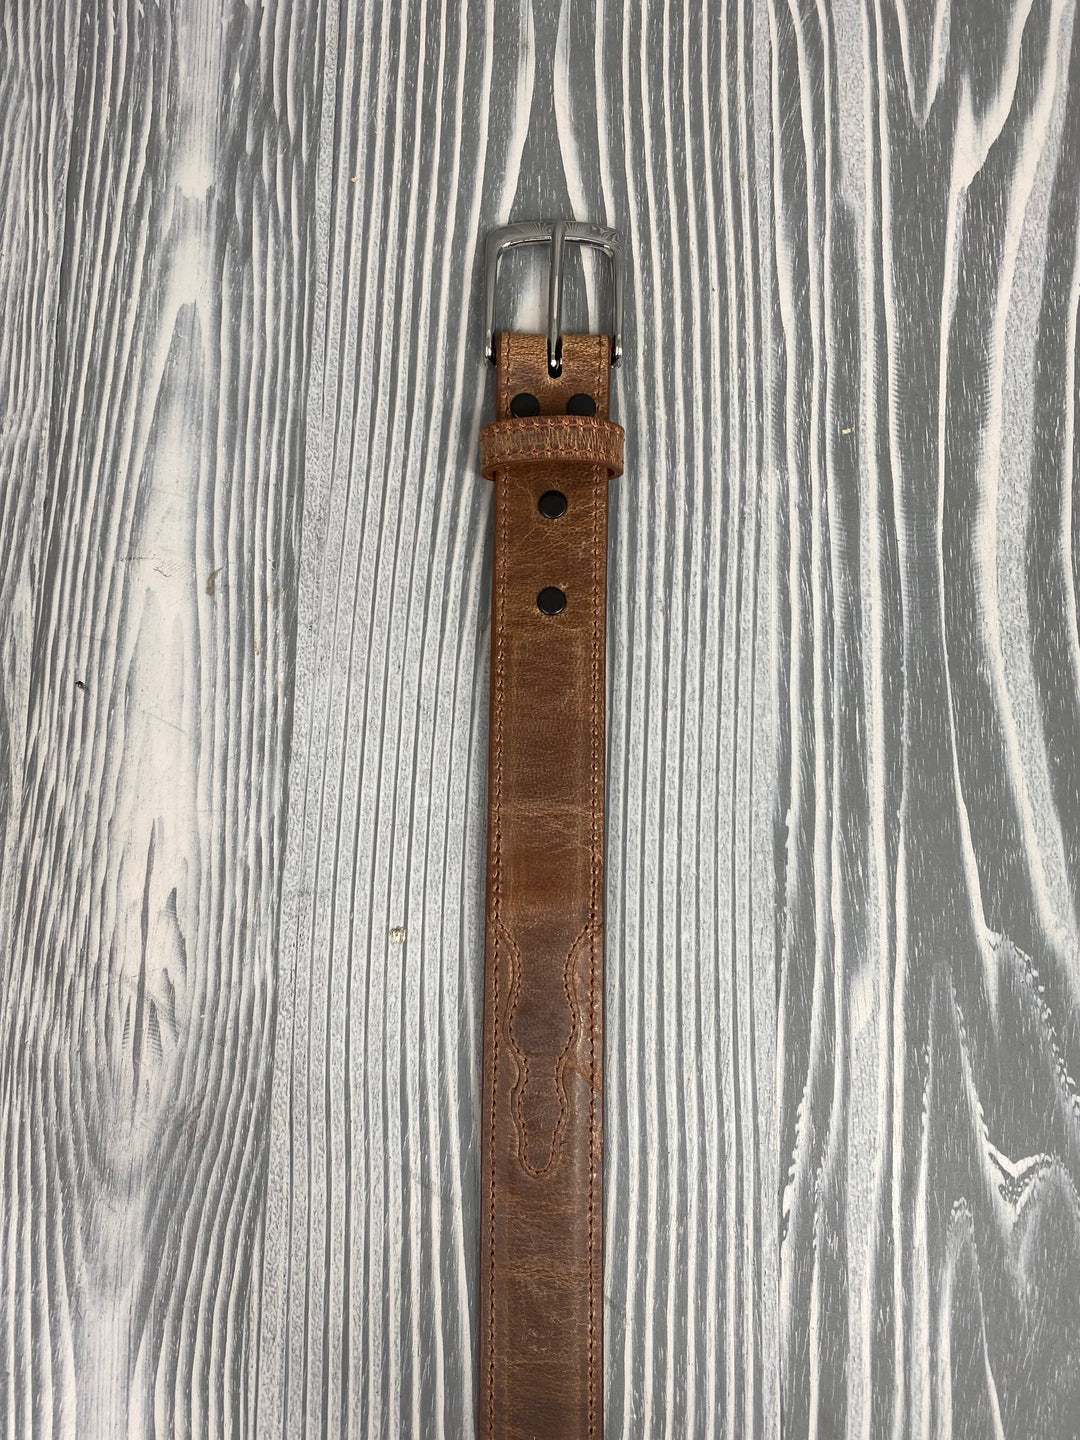 Cintura Chacon 1 1/4" marrone chiaro per capra Mad Dog